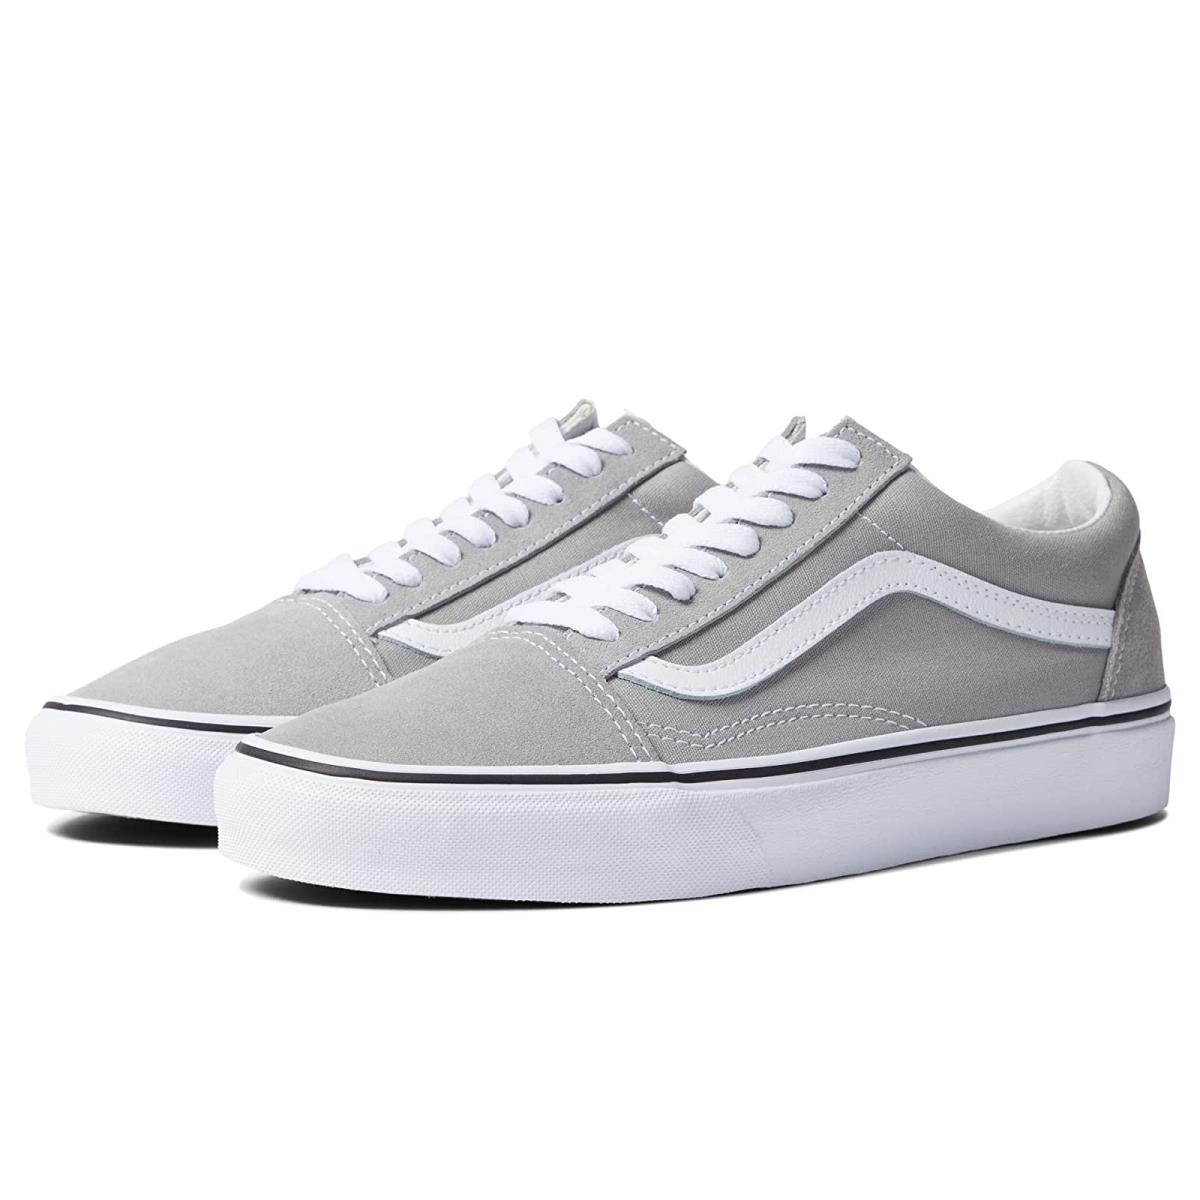 Unisex Sneakers Athletic Shoes Vans Old Skool Drizzle/True White 1